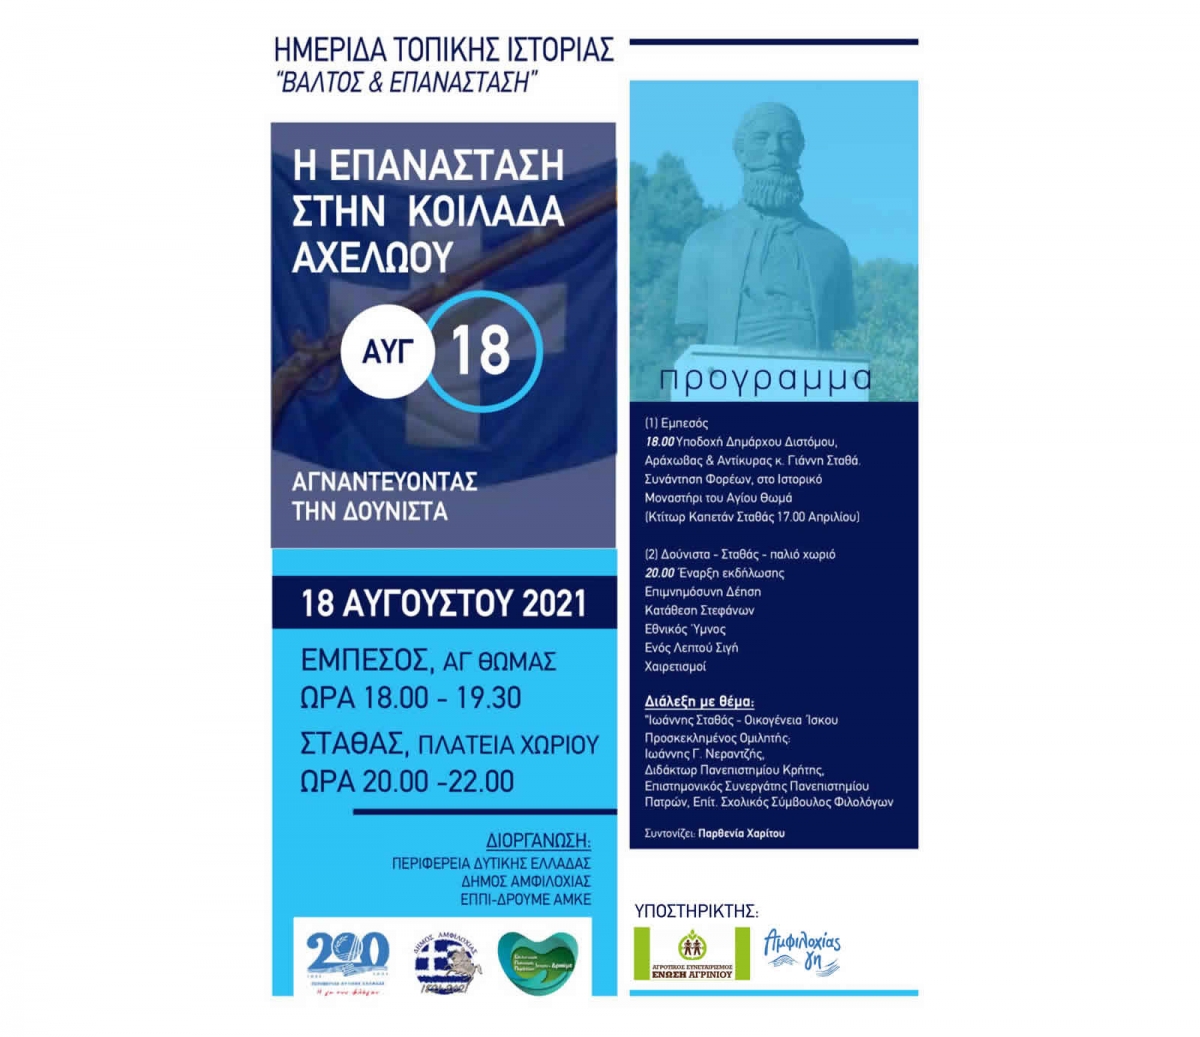 Πρόσκληση σε ημερίδα Δήμου Αμφιλοχίας σε Εμπεσό και Σταθά με τίτλο «Αγναντεύοντας την Δούνιστα» (Τετ 18/8/2021 20:00)